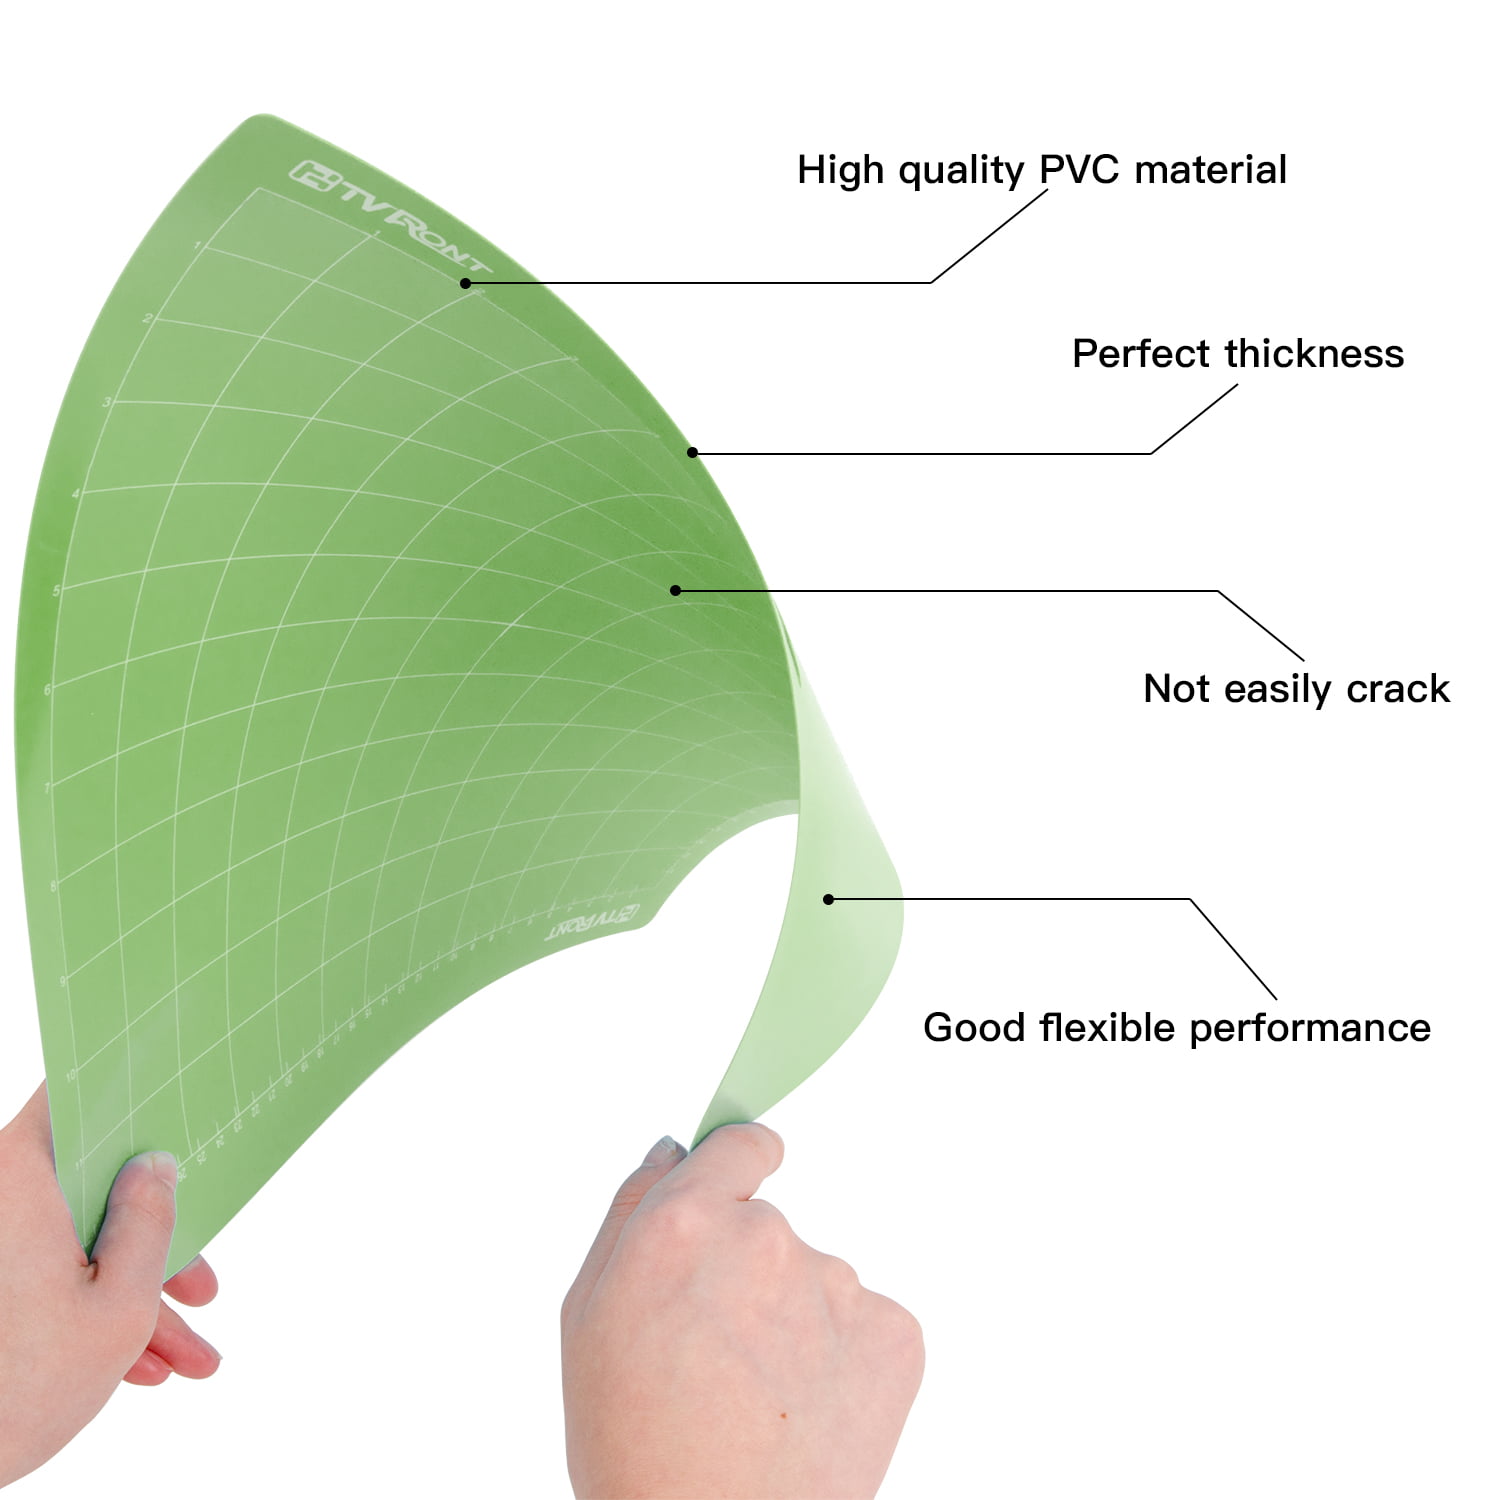 Xinart StandardGrip Cutting Mat for Cricut Maker 3/Maker/Explore 3/Air 2/Air/One(12x12 inch, 3 Mats) Standard Adhesive Sticky Green Quilting Cricket